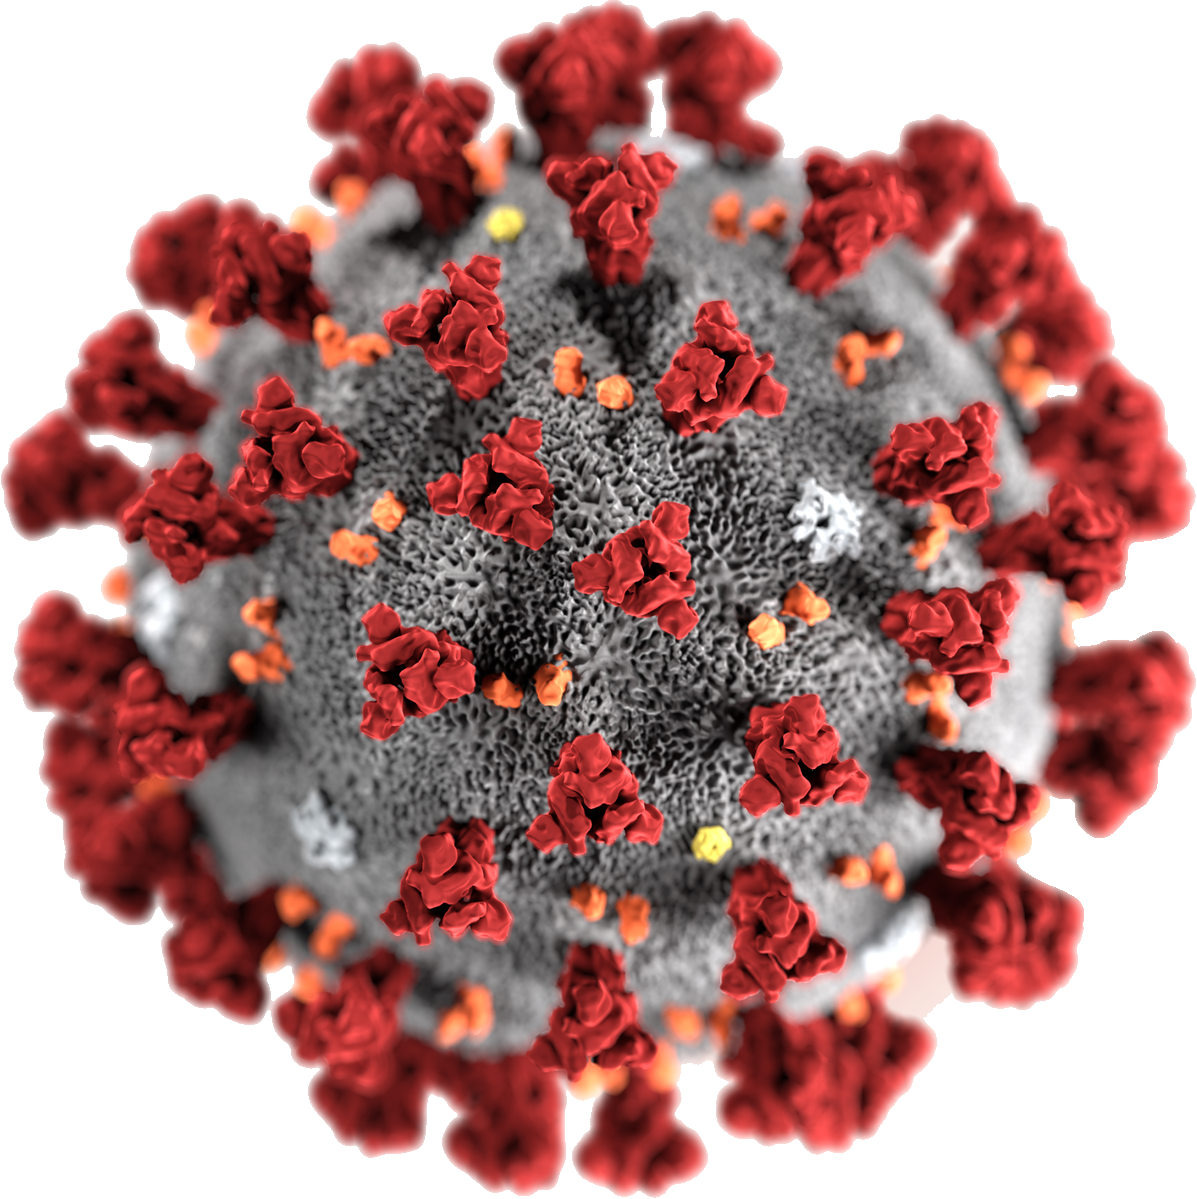 ไวรัสโคโรน่า